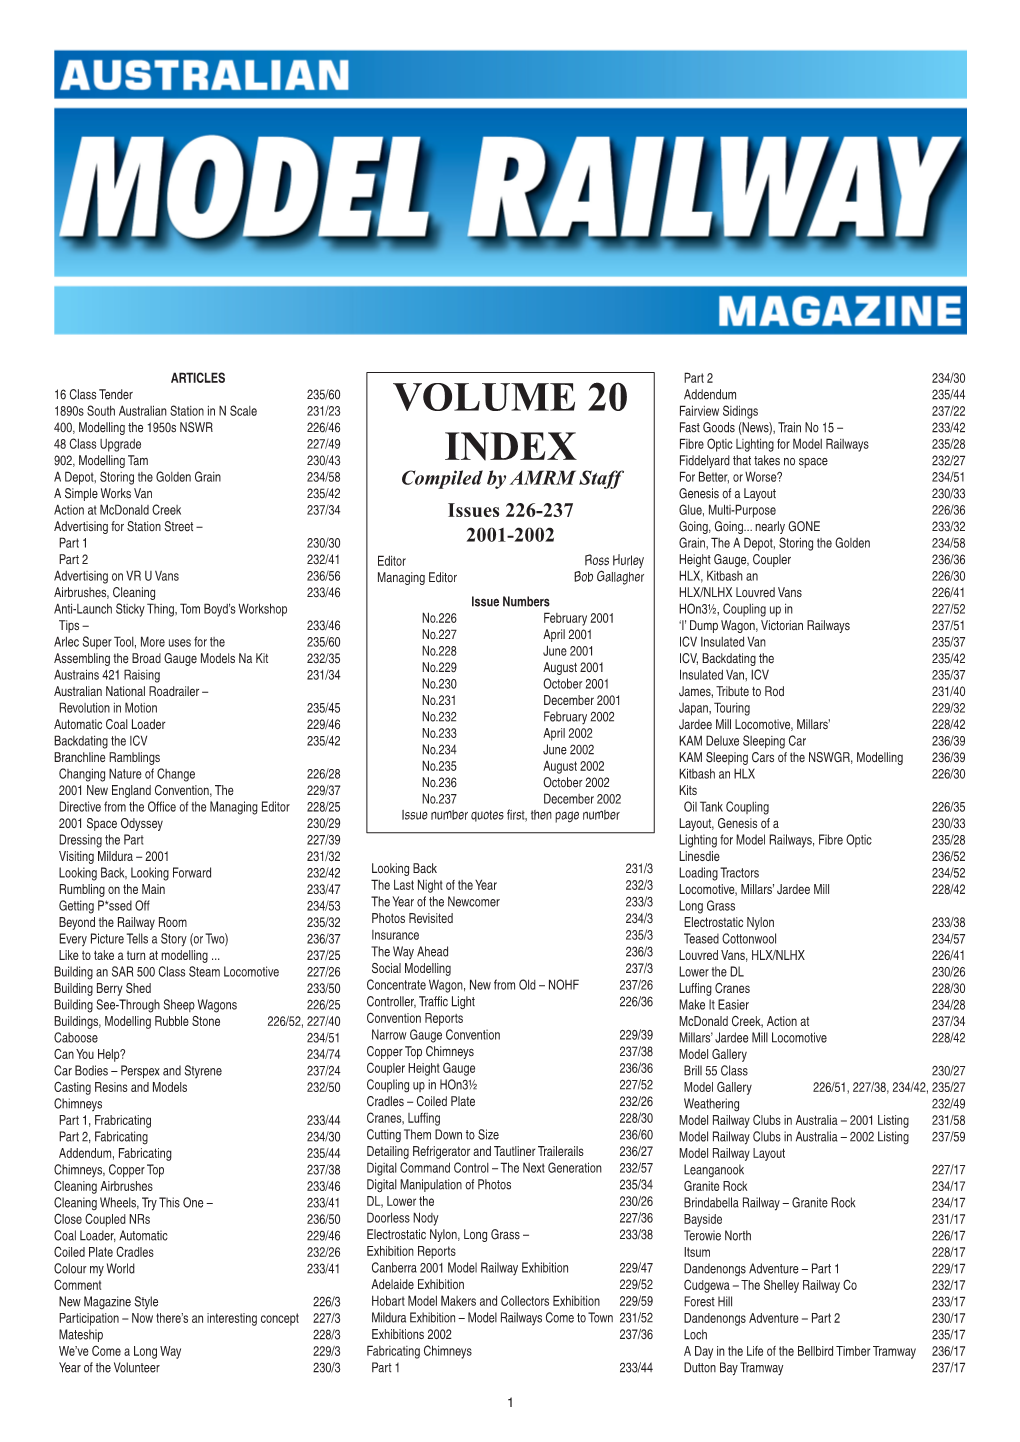 Volume 20 Index